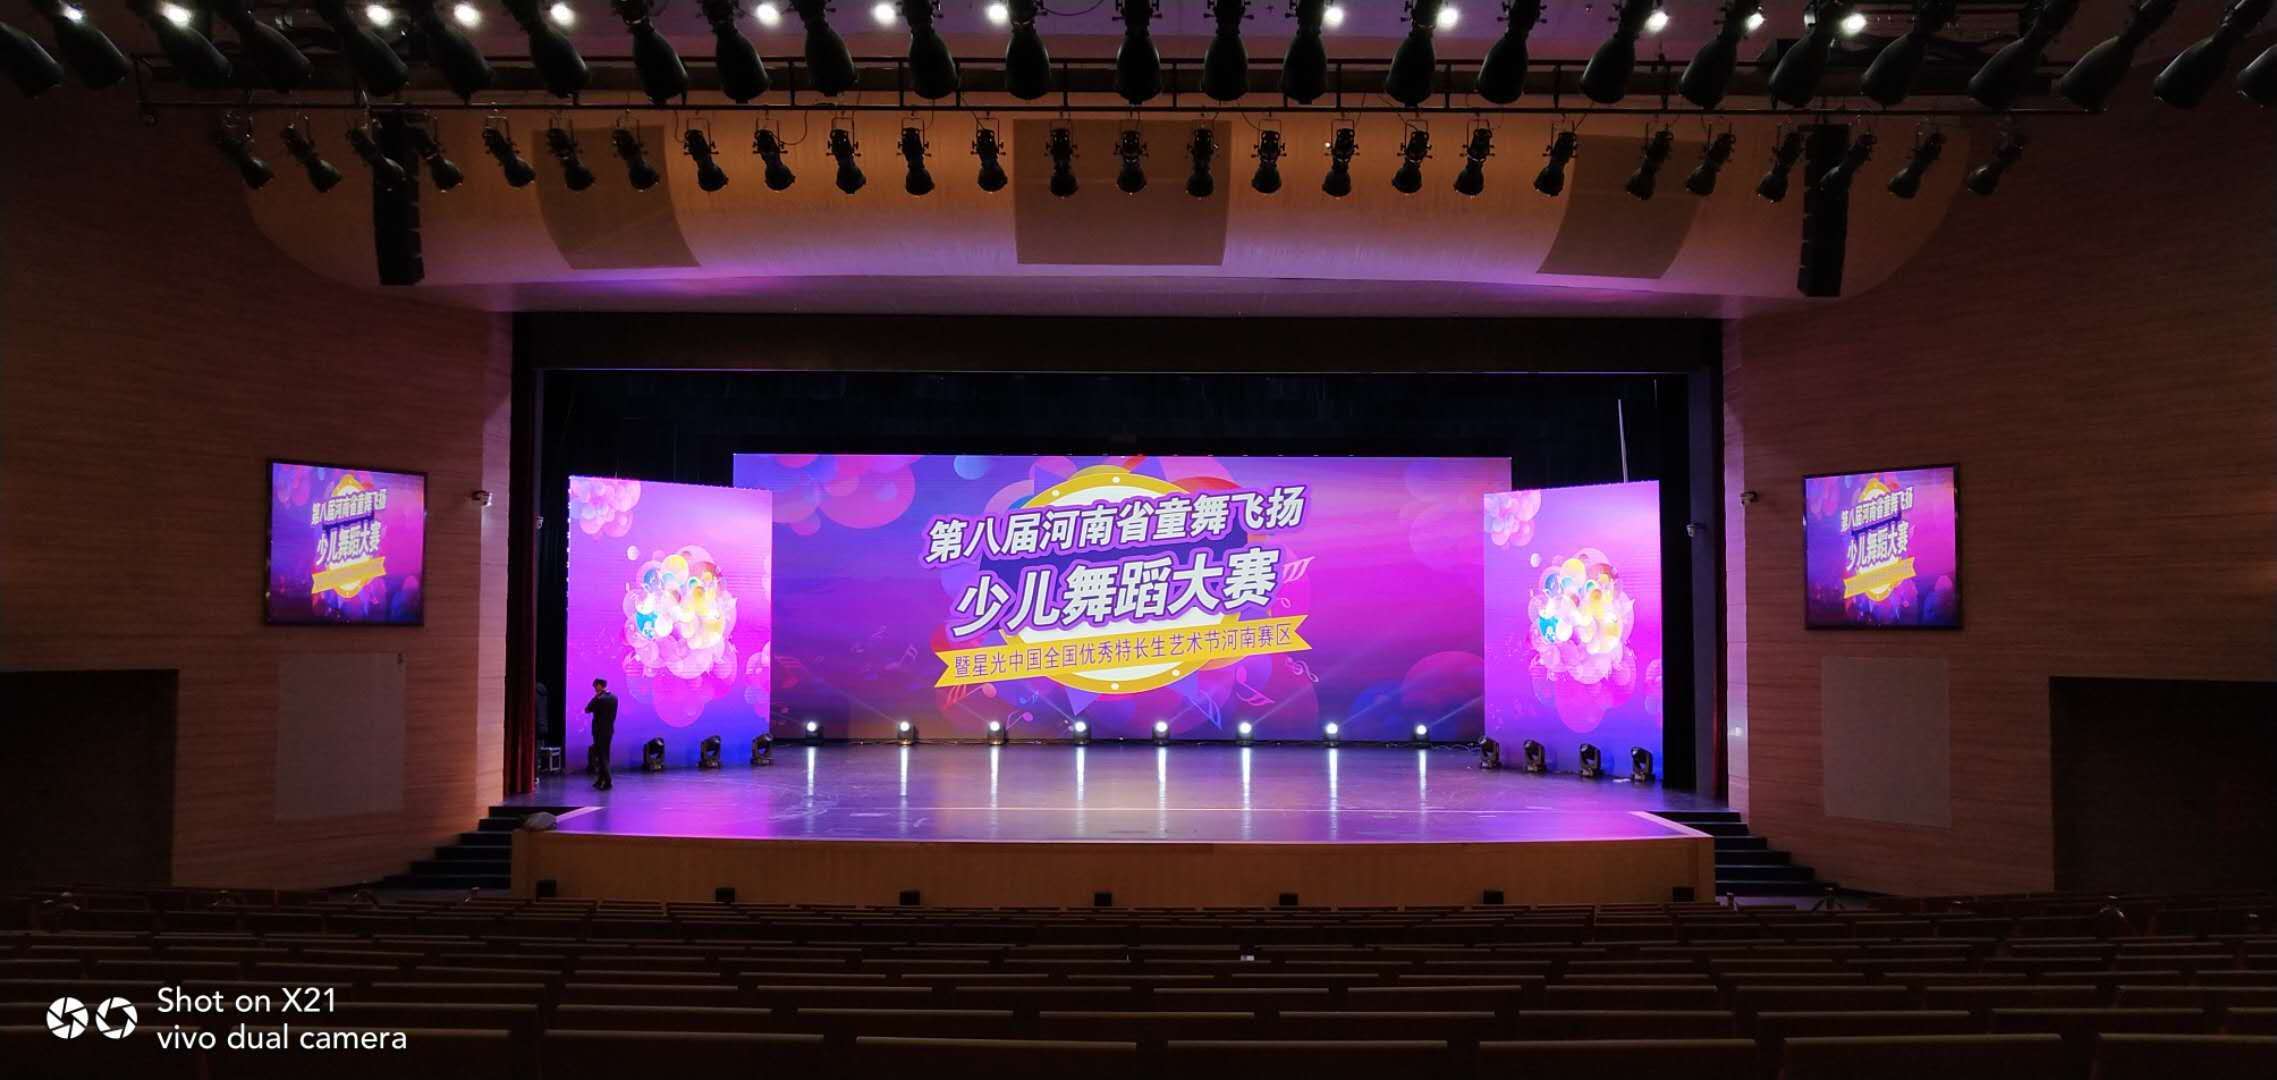 郑州led大屏幕租赁、灯光音响租赁、舞台设备搭建、会议活动策划